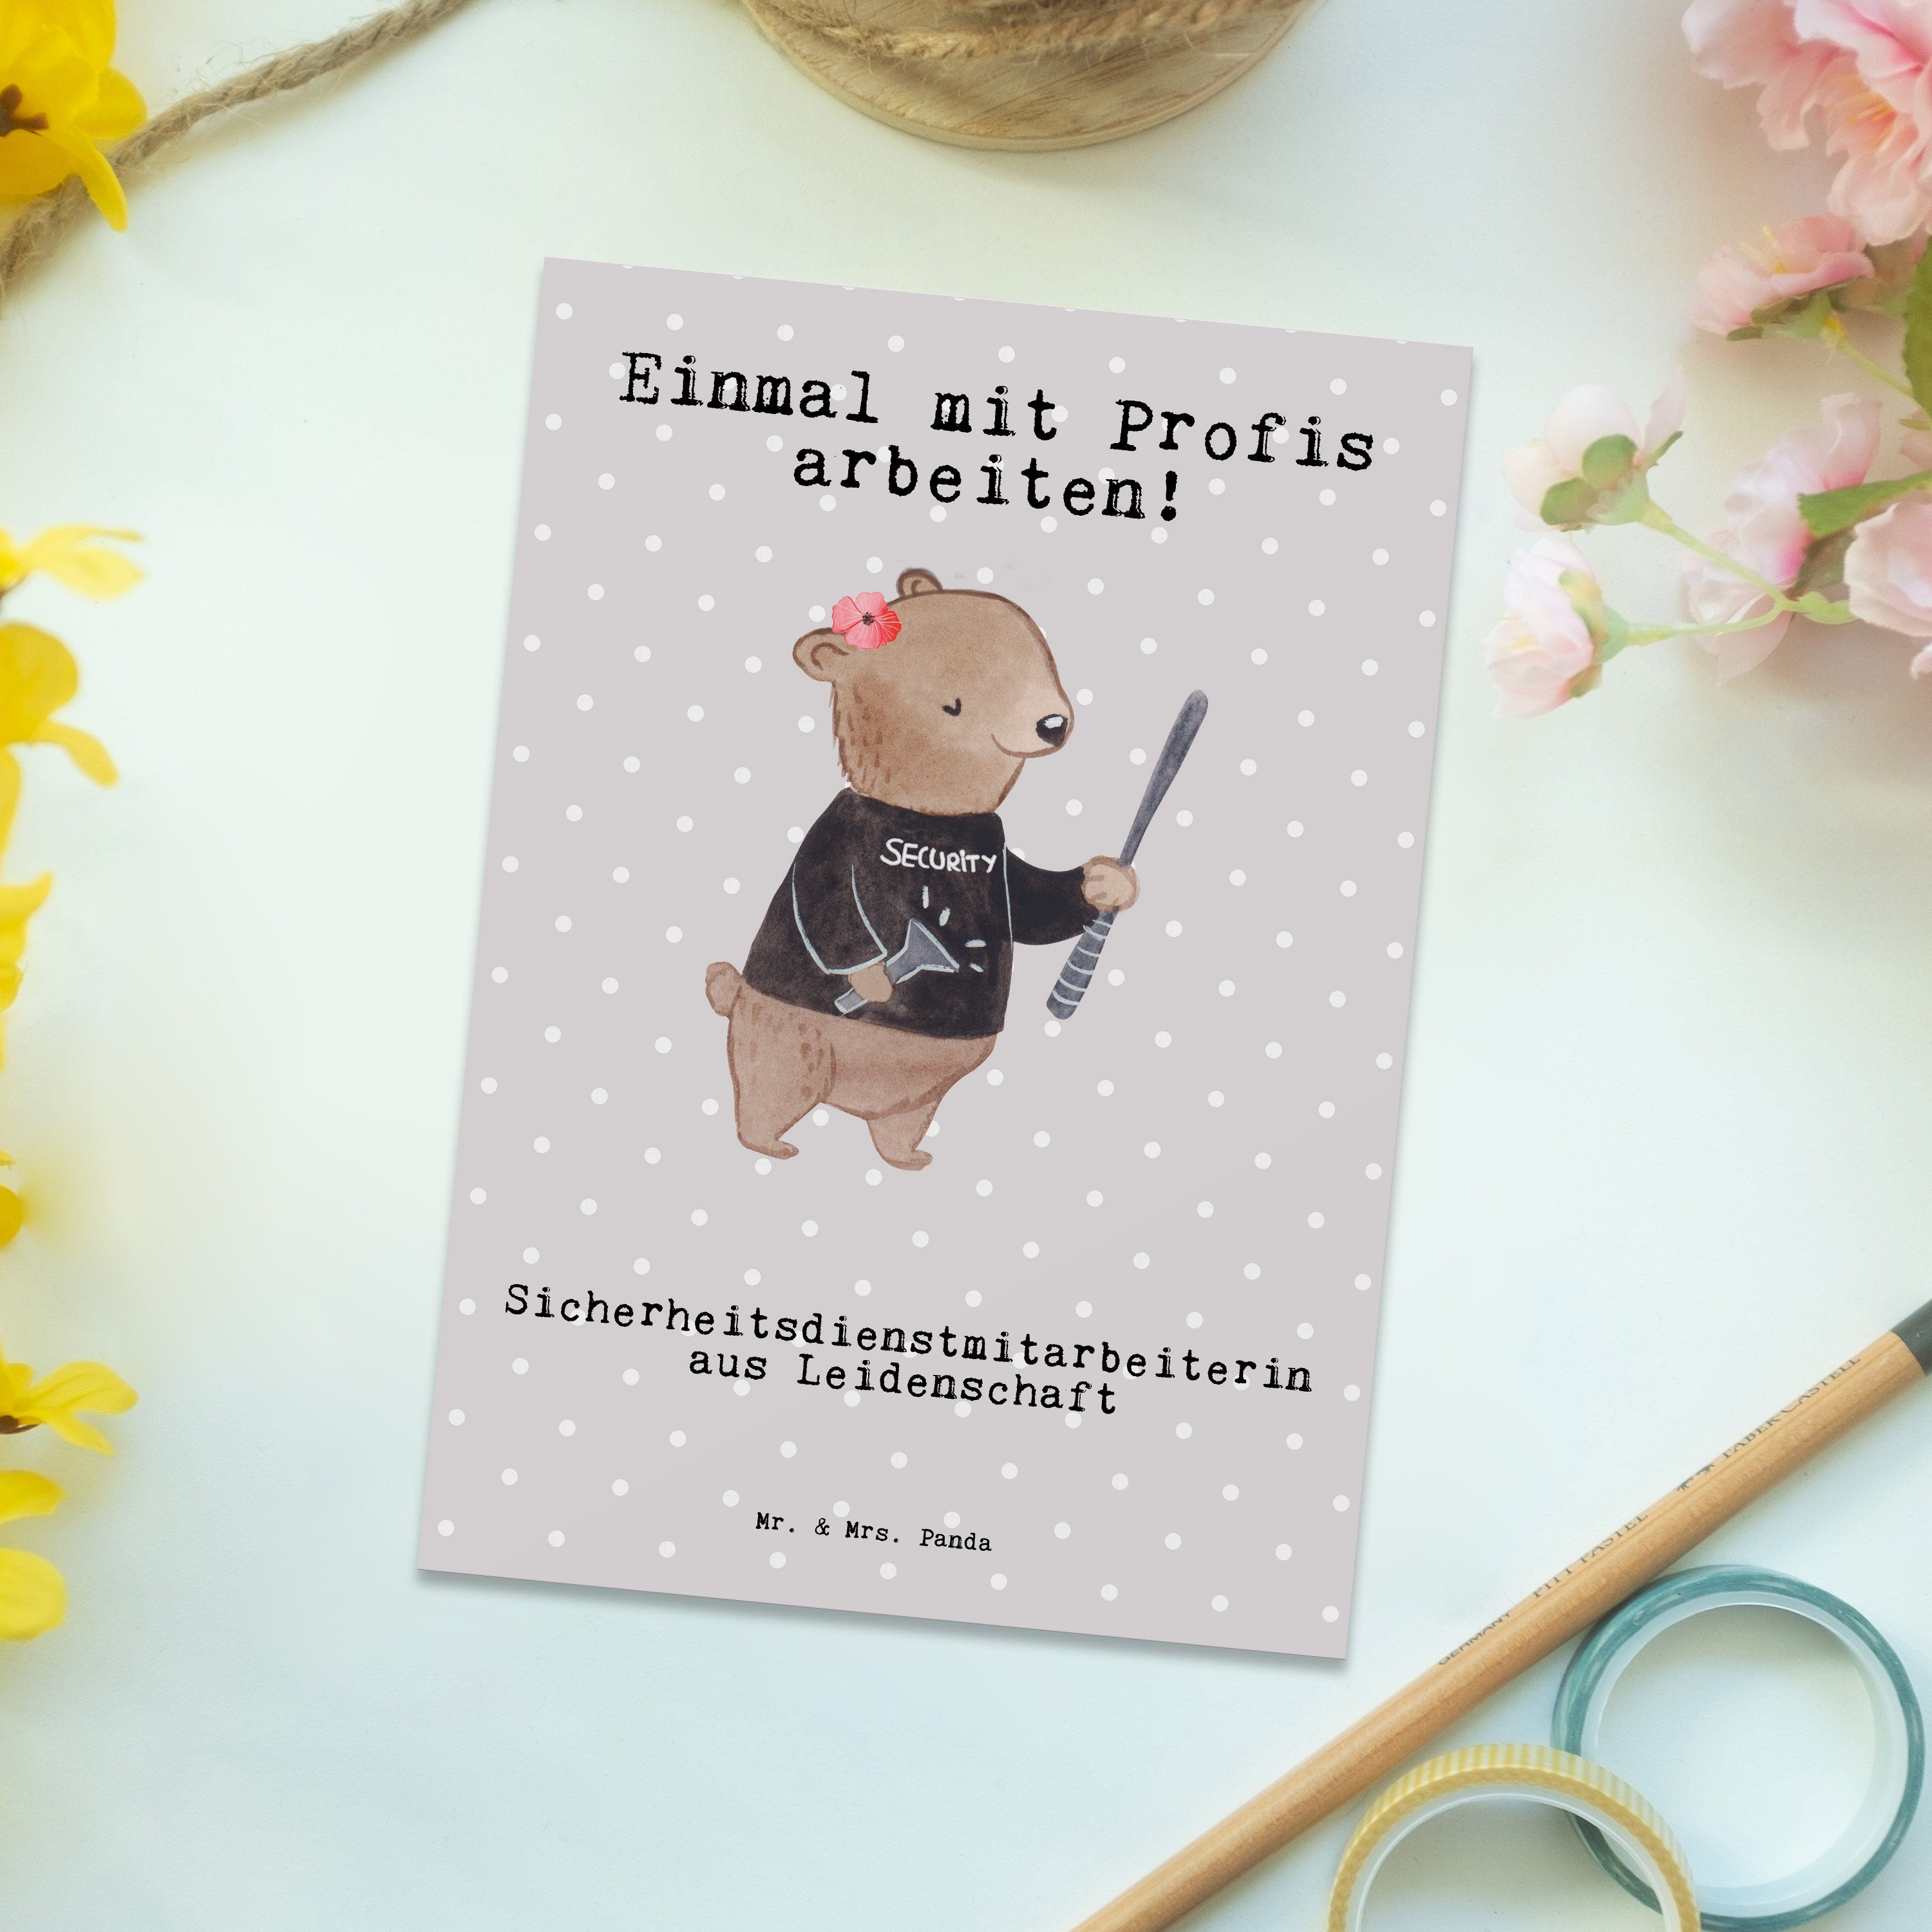 Mr. & Mrs. Panda - Pastell - Leidenschaft Postkarte Gesc aus Sicherheitsdienstmitarbeiterin Grau